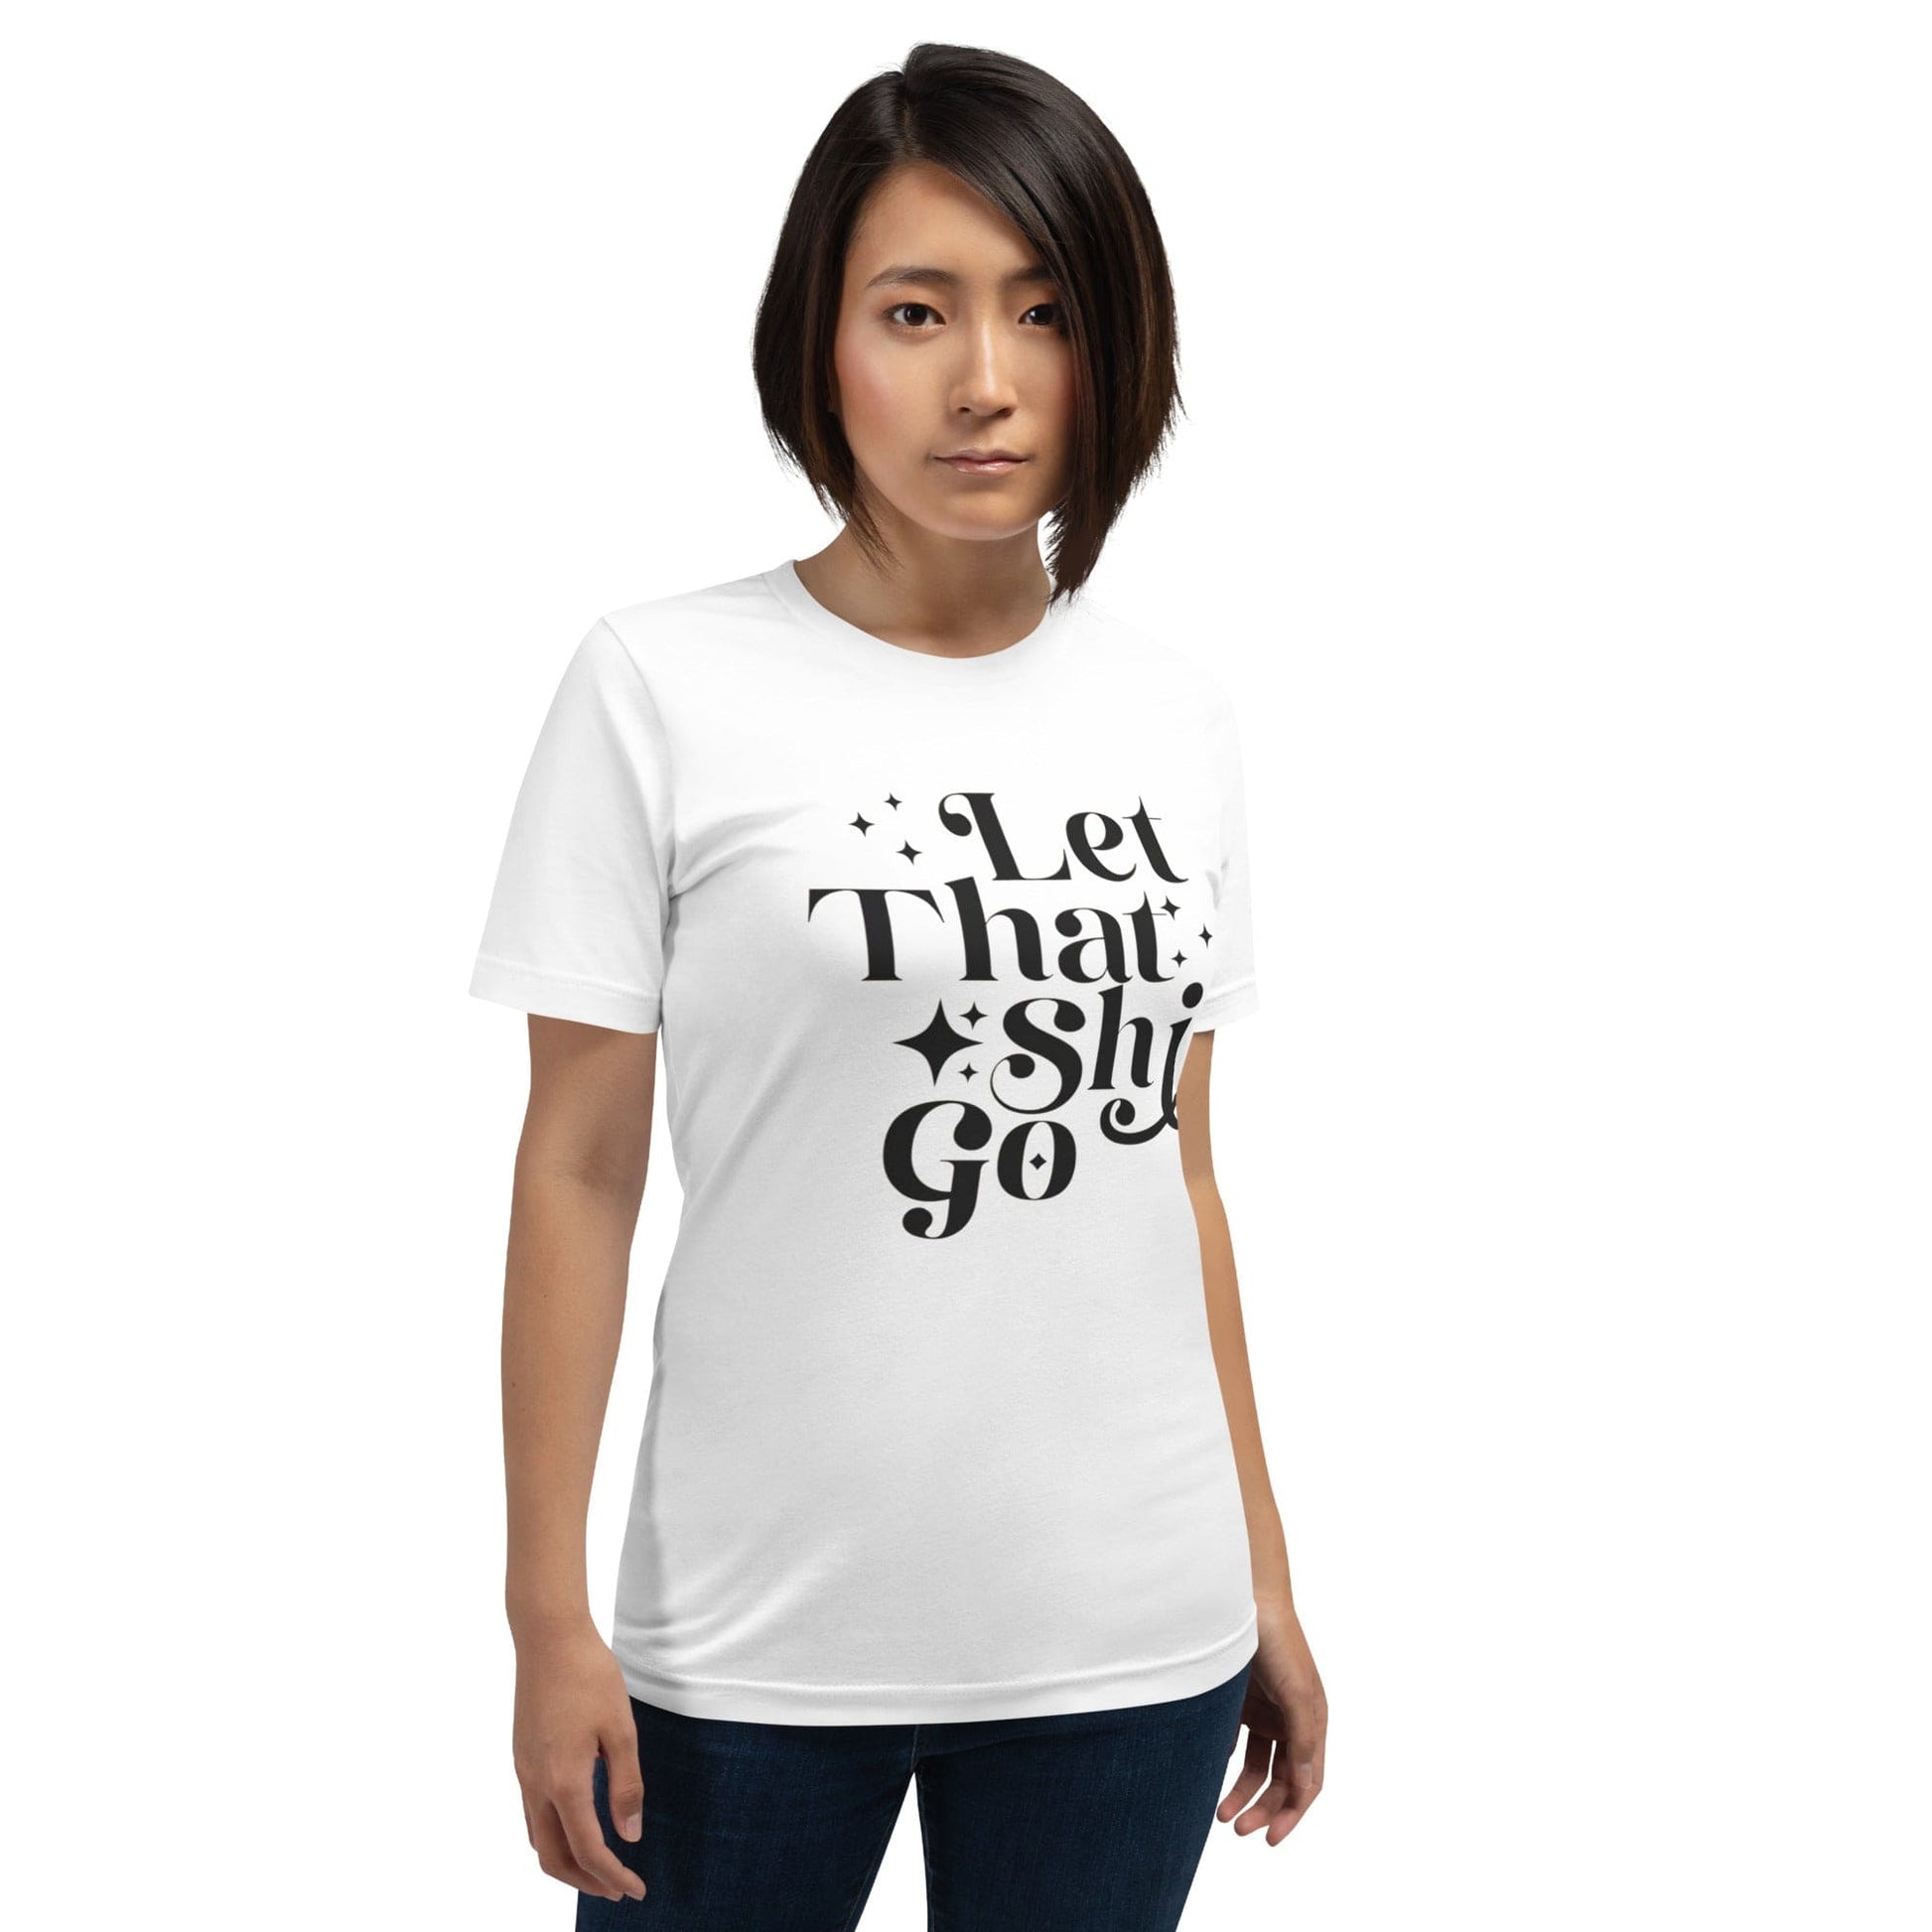 InsensitiviTees™️ Let That Shit Go Unisex t-shirt